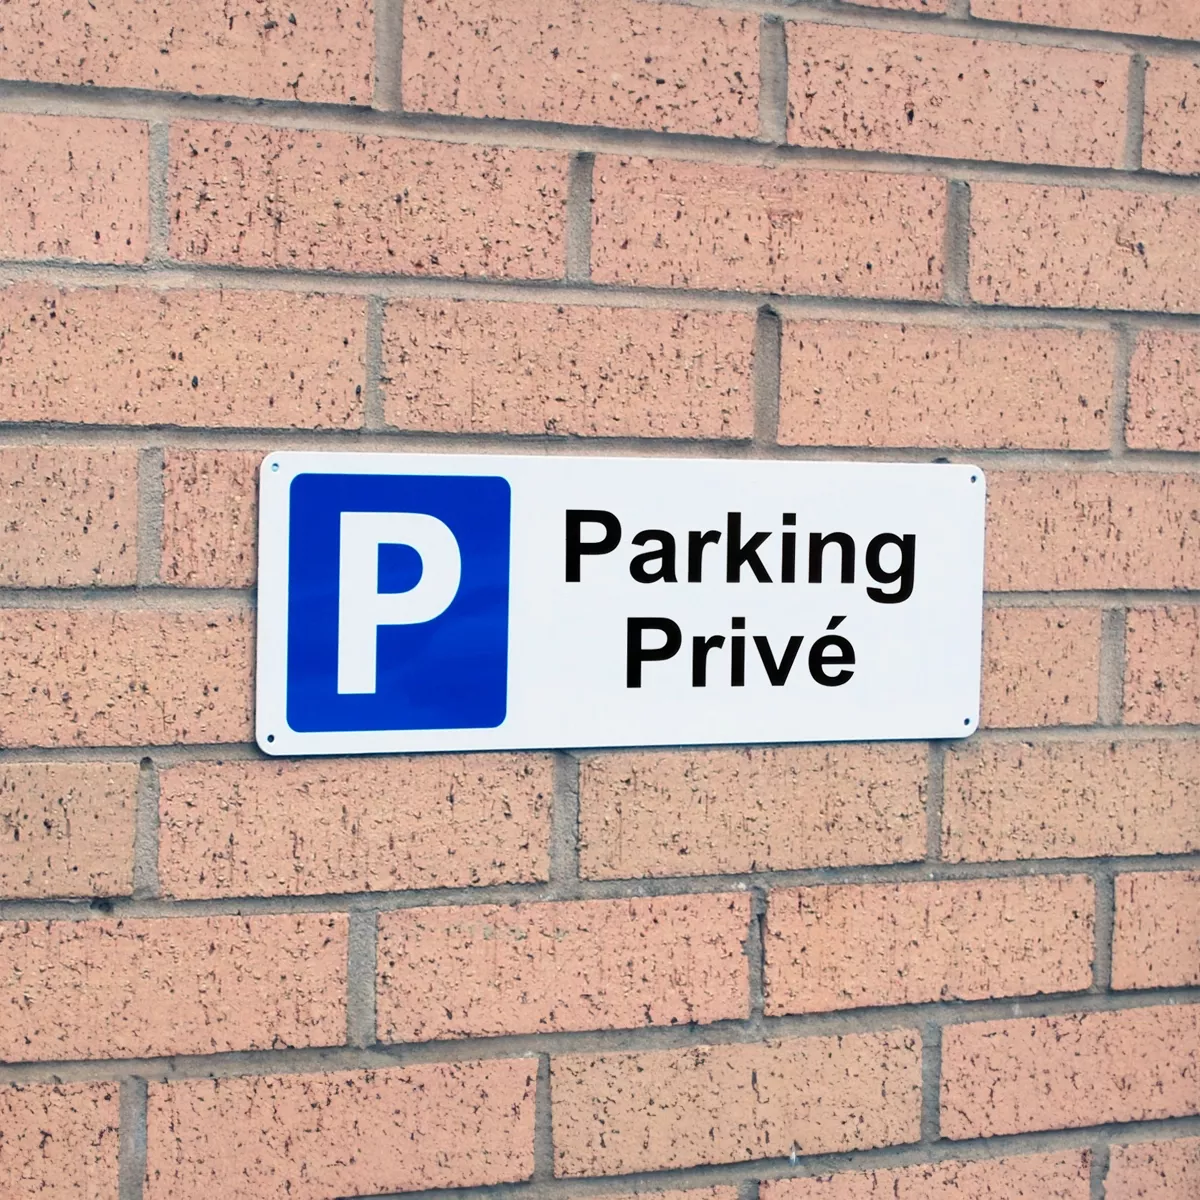 Panneau Parking Privé